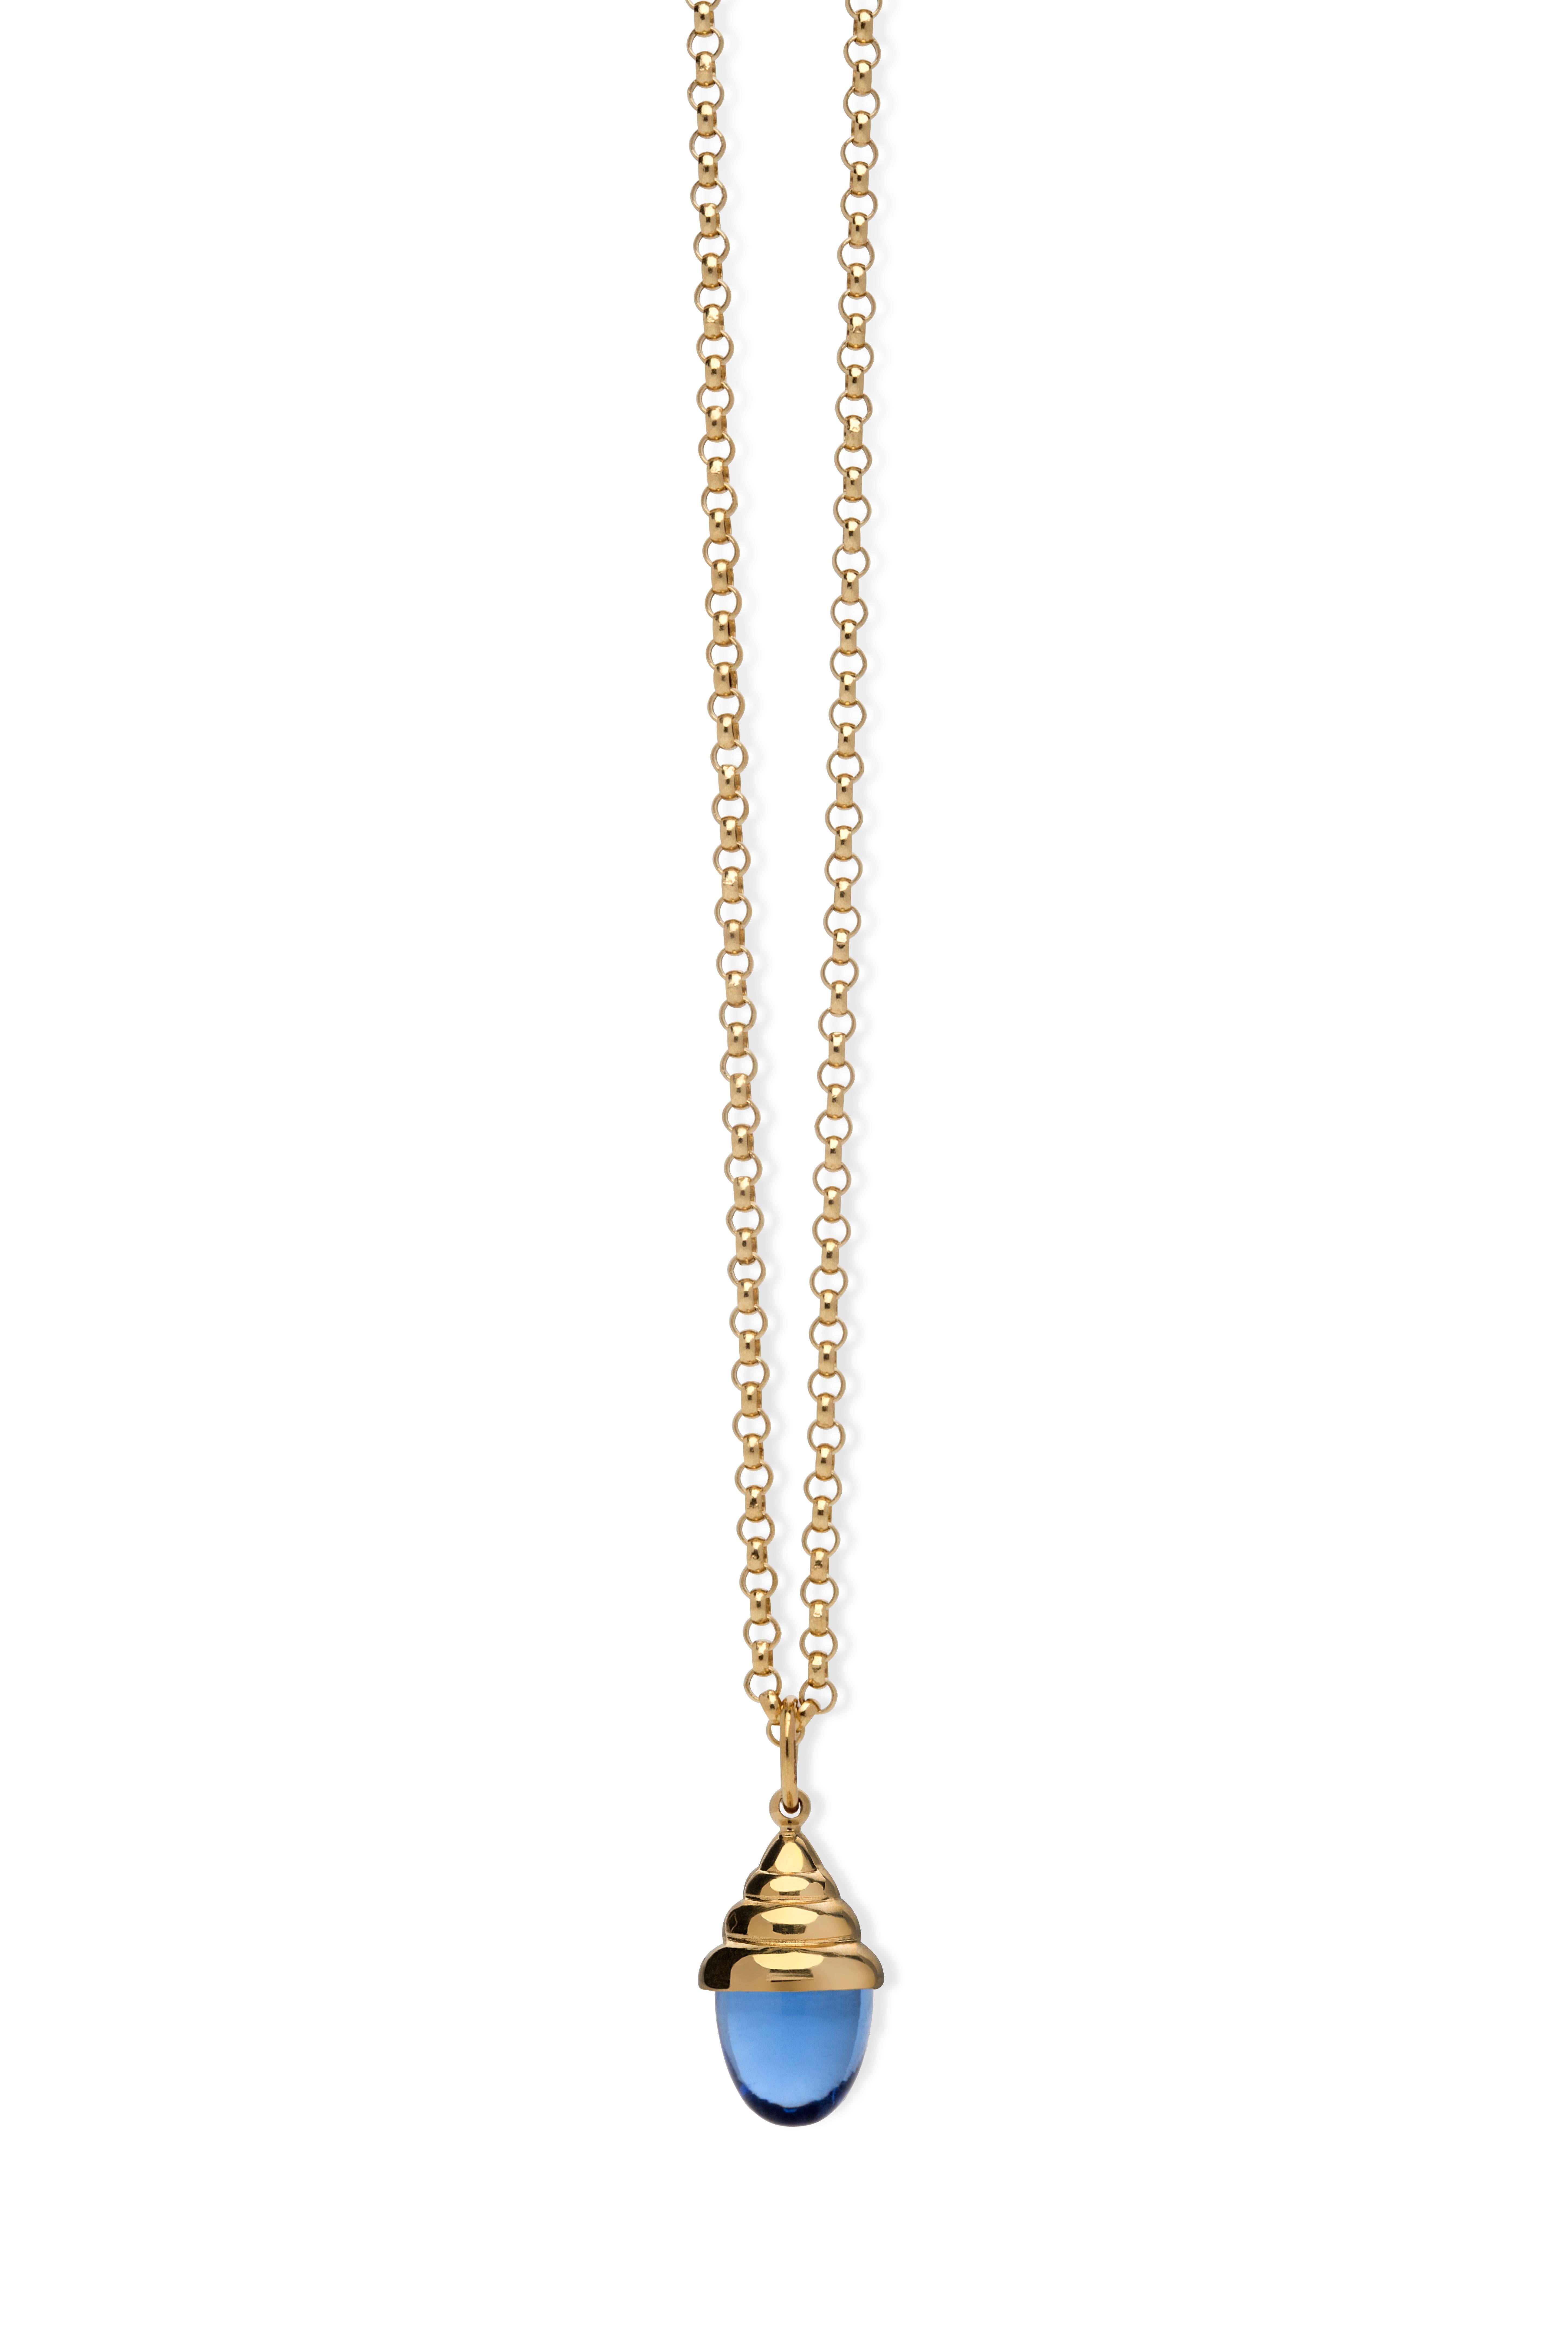 Pink Tourmaline Classic Quartz 18 Karat Yellow Solid Gold Drop Pendant Necklace For Sale 4